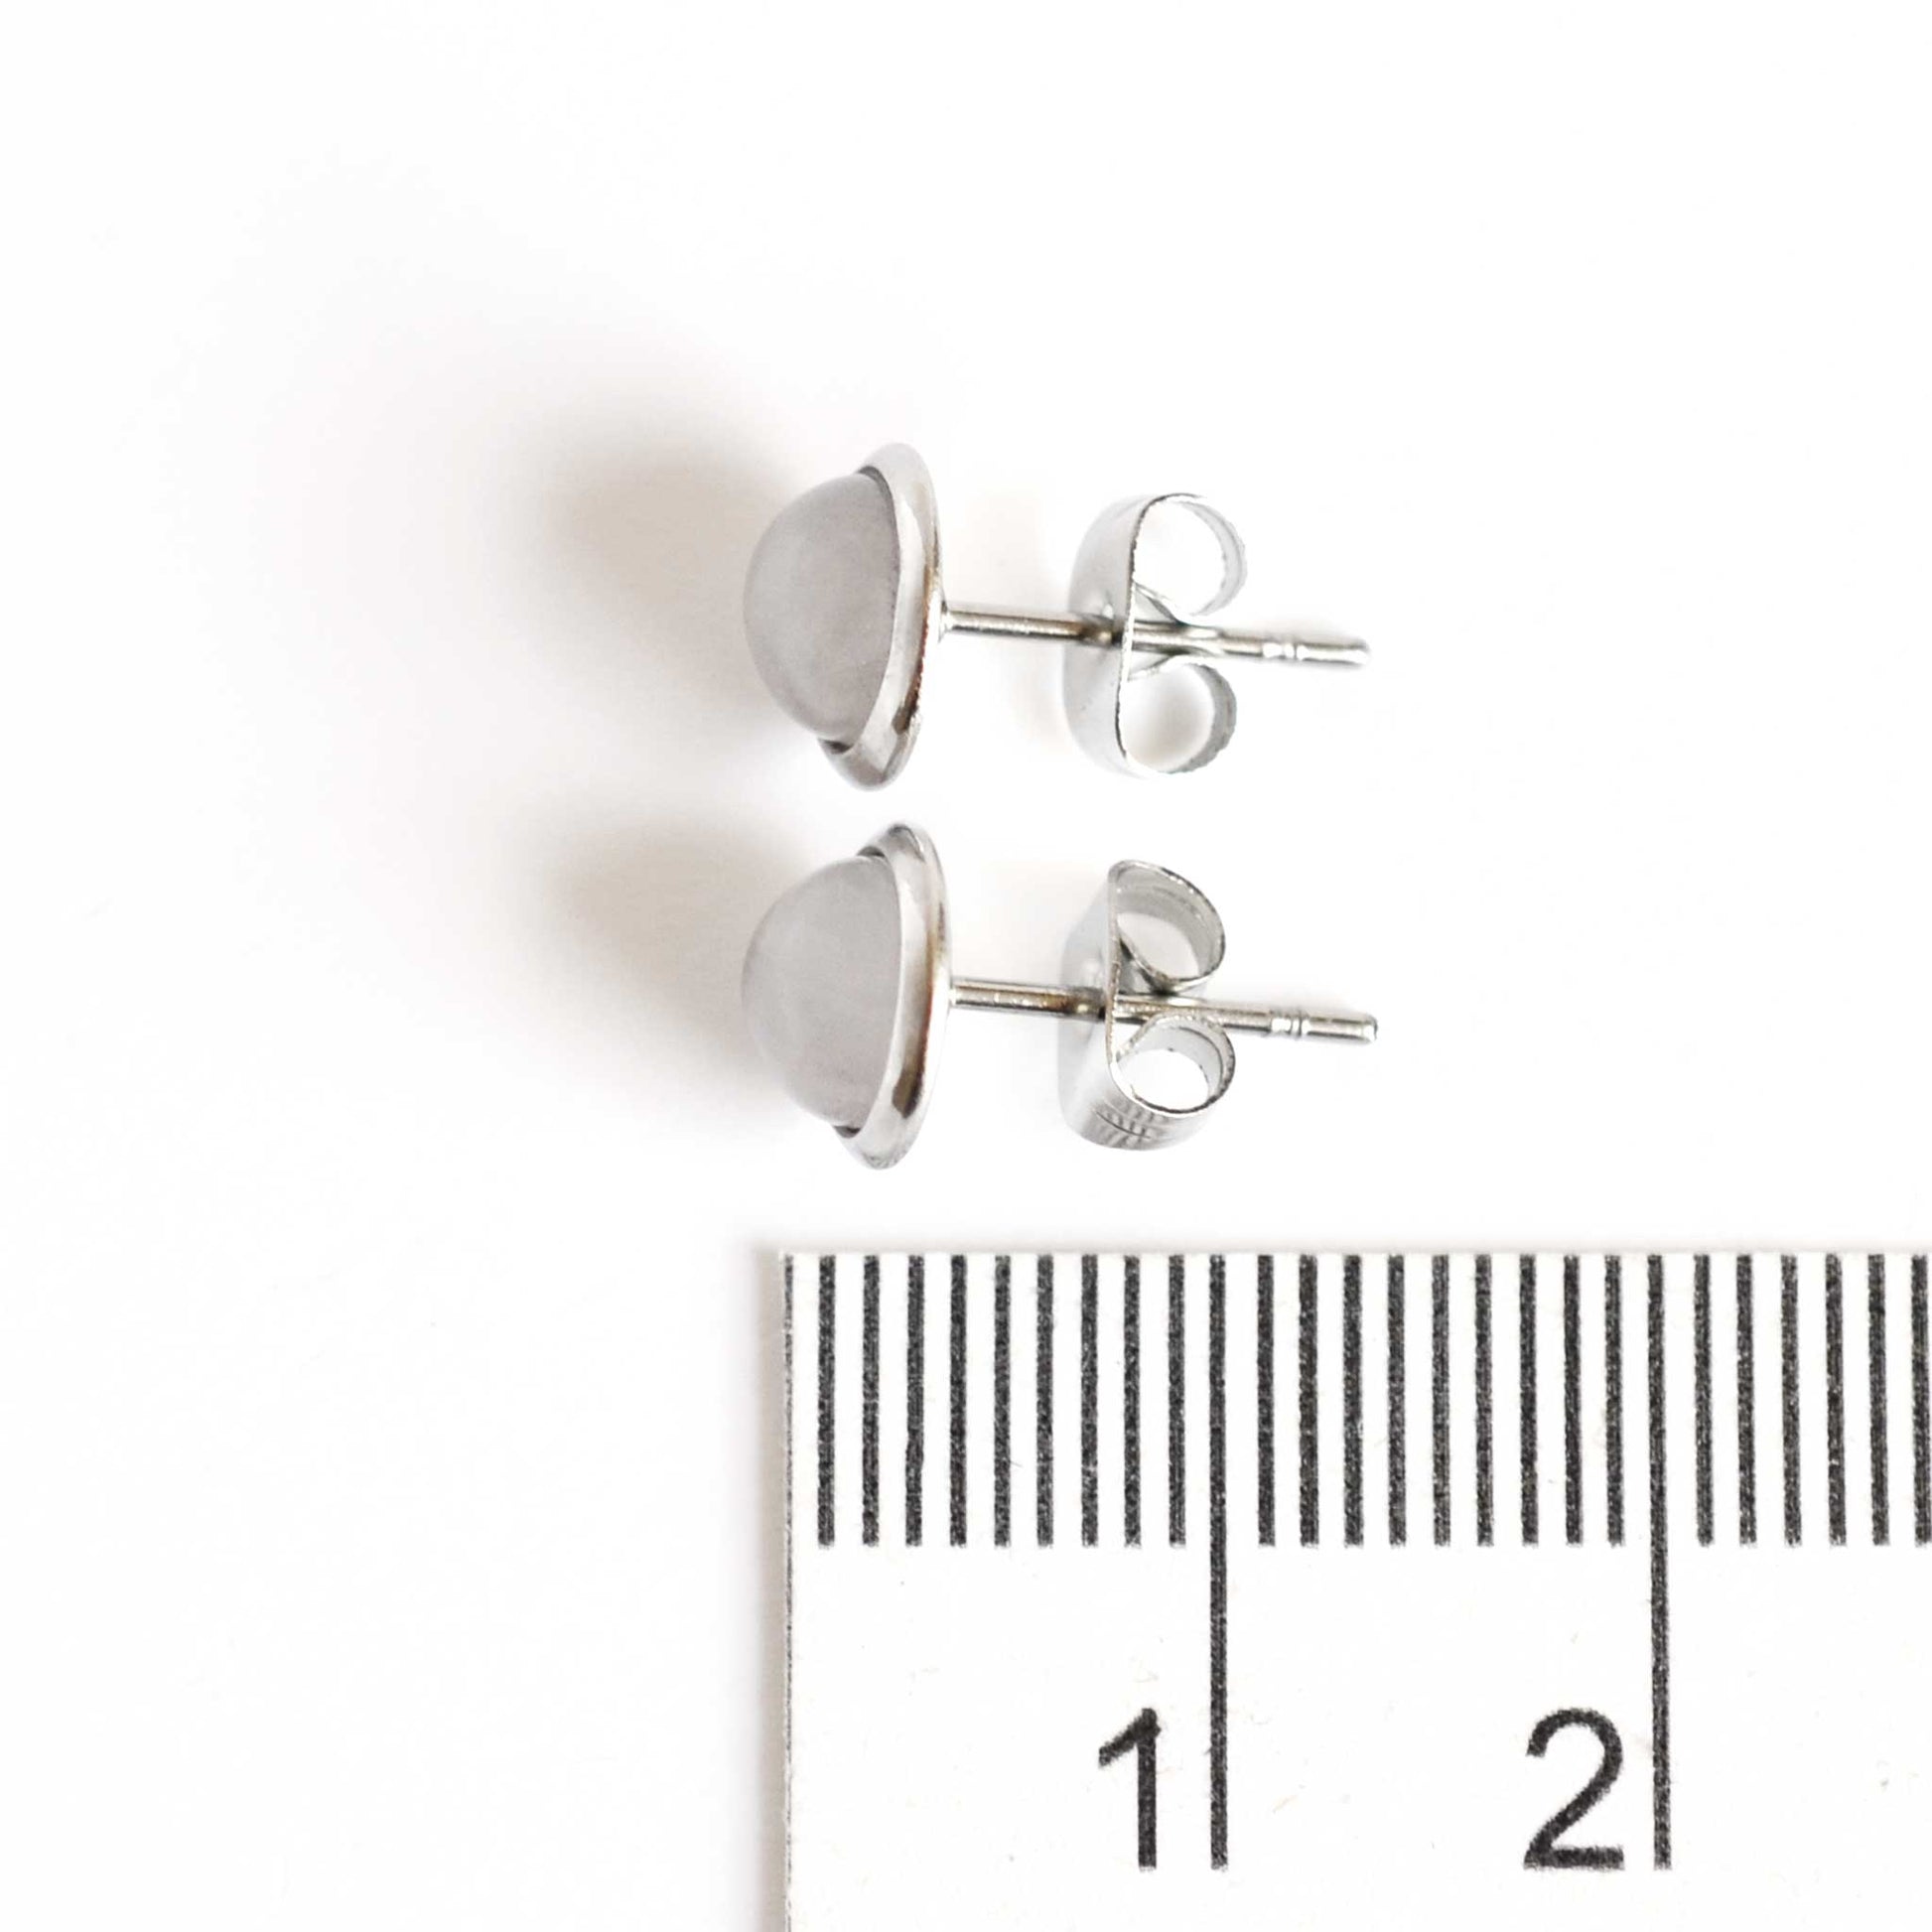 8mm diameter Rose Quartz stud earrings next to ruler